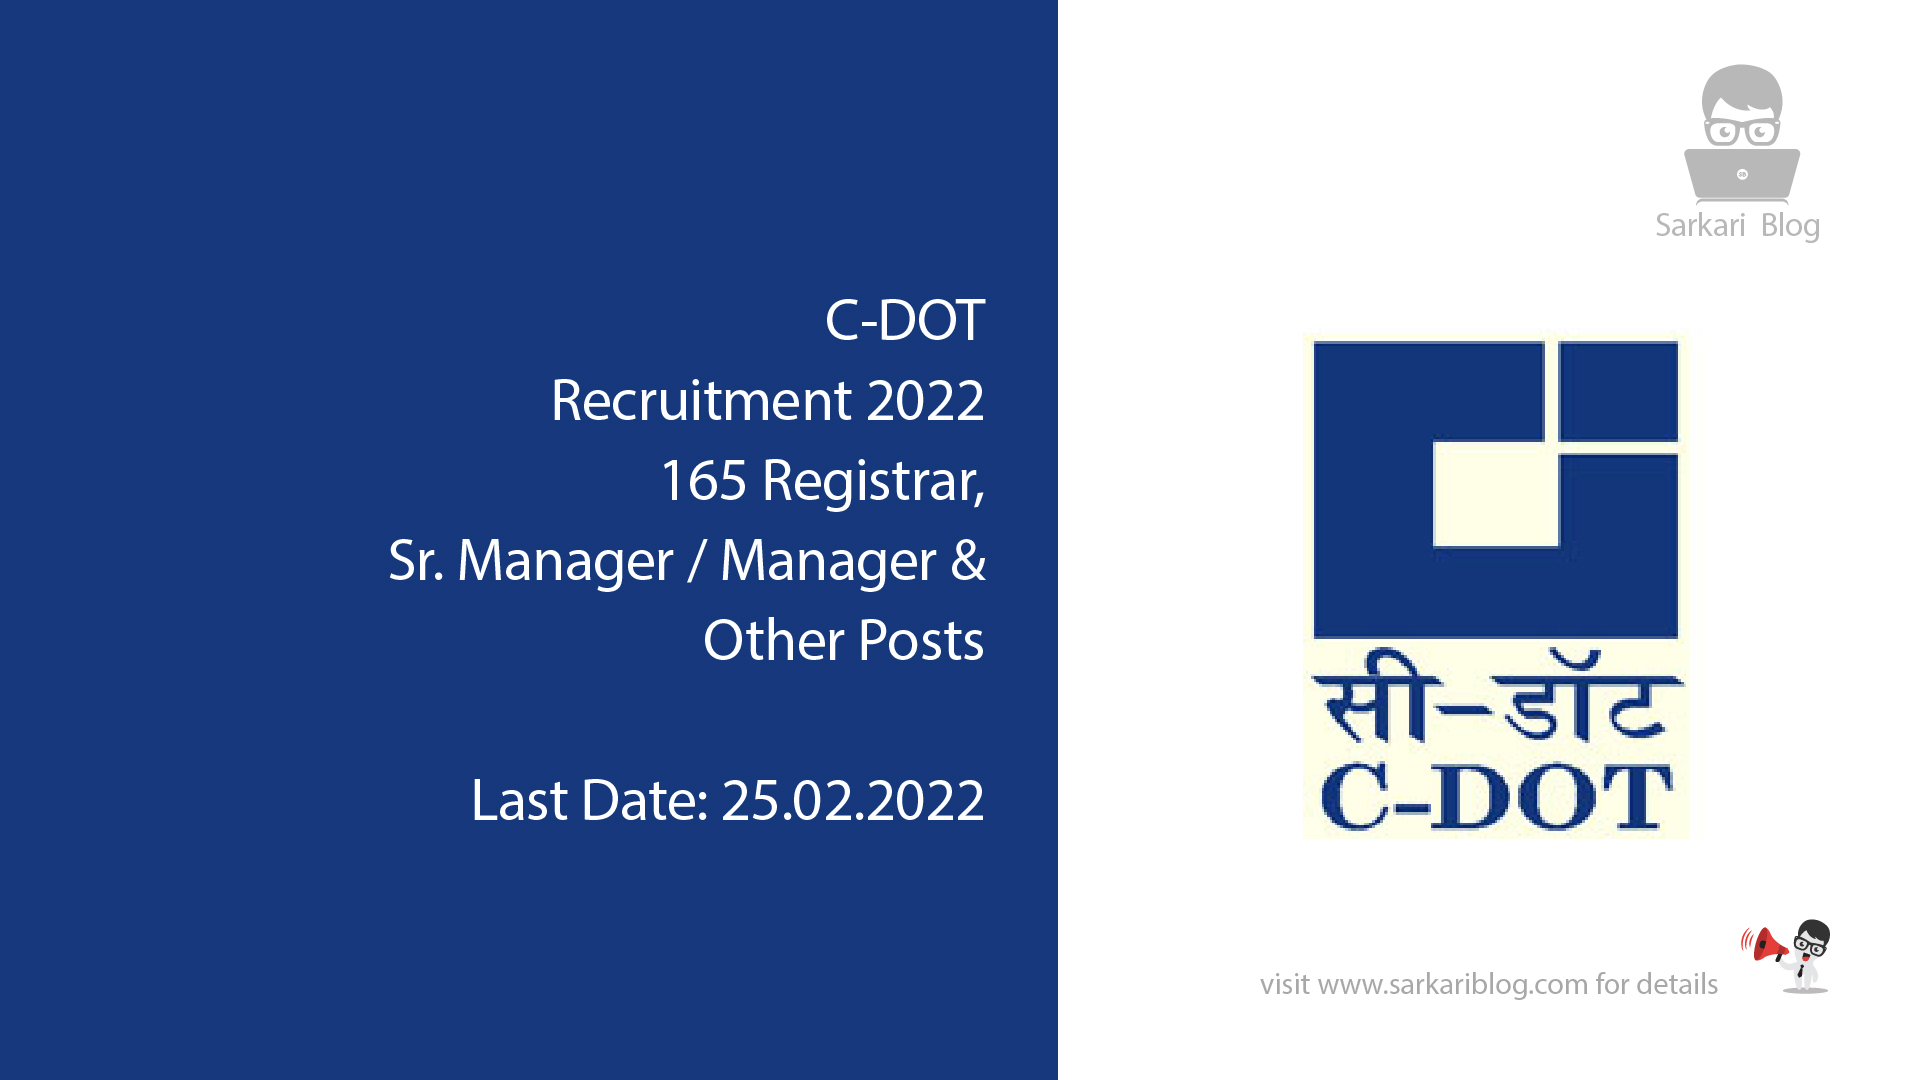 CDOT Recruitment 2022